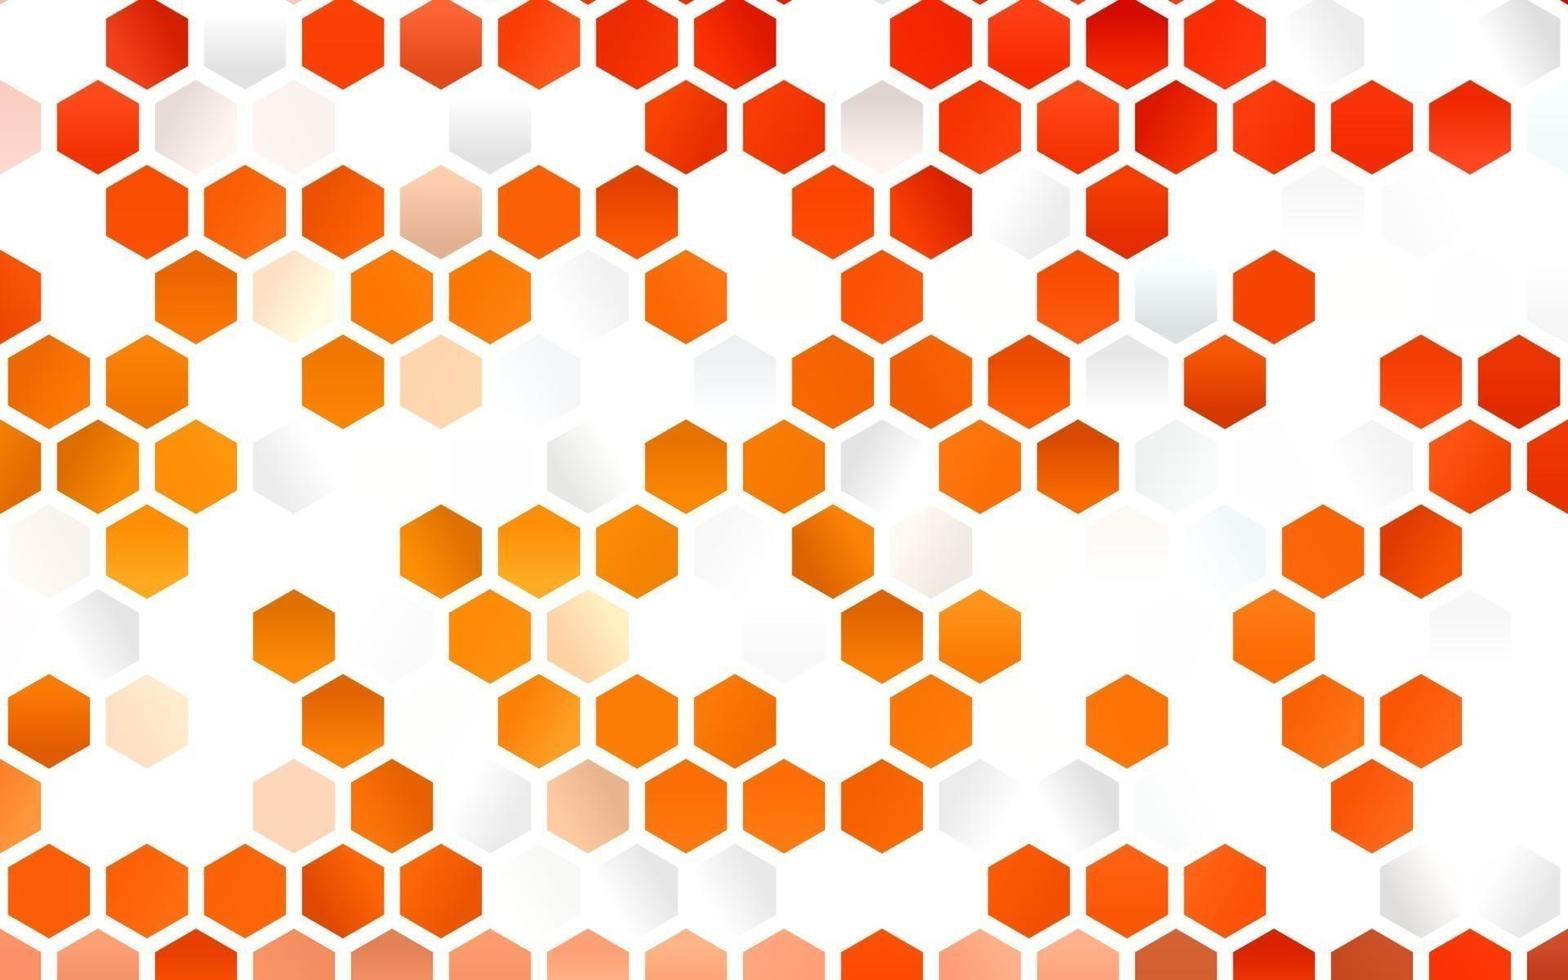 ljus orange vektor layout med sexkantiga former.